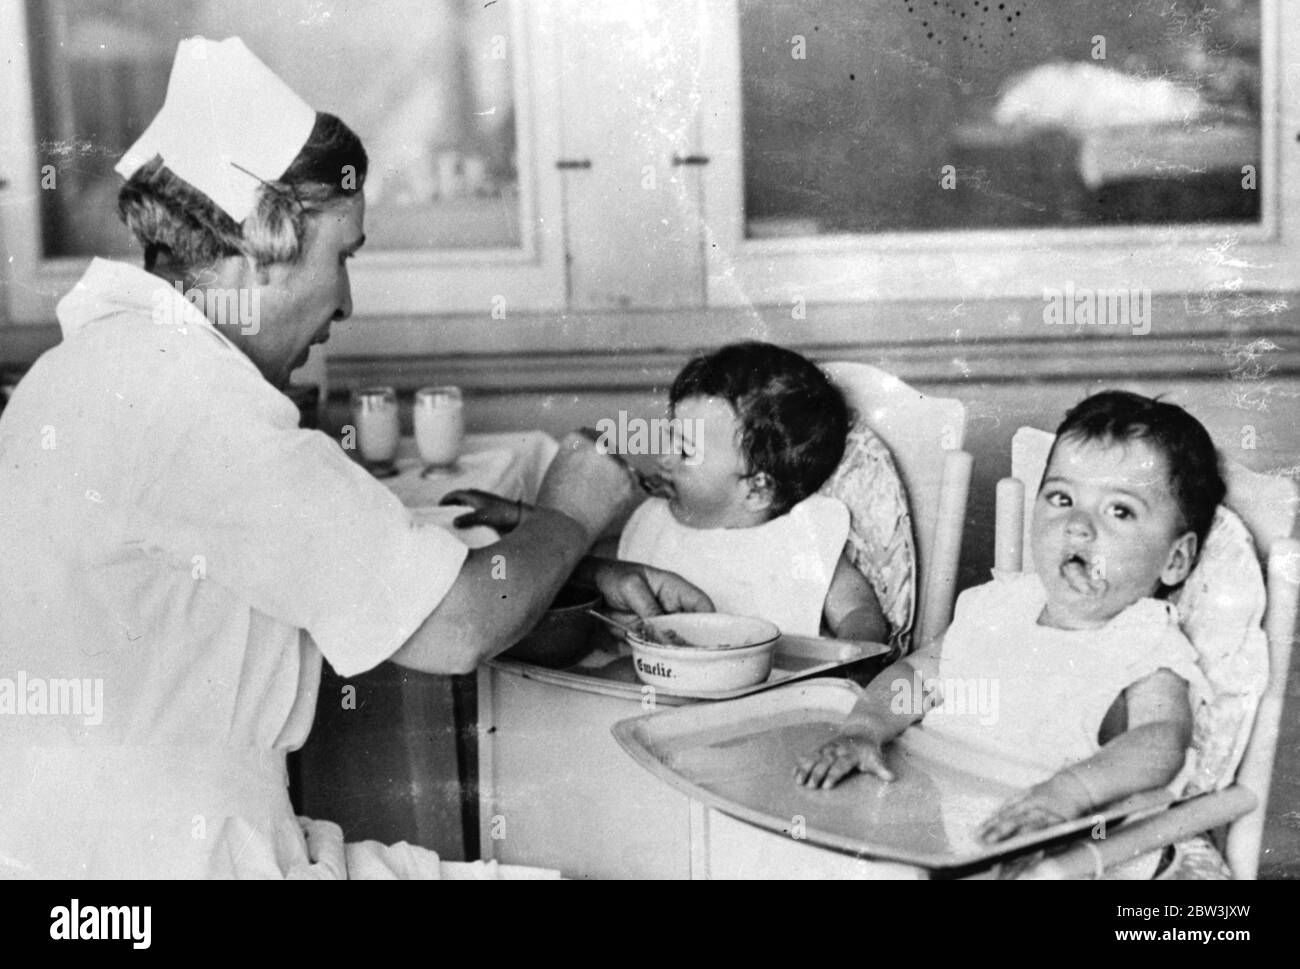 Eine der Dione Quint Fütterung . Cecile nimmt einen Mund von Nahrung von der Krankenschwester. 1935 Stockfoto